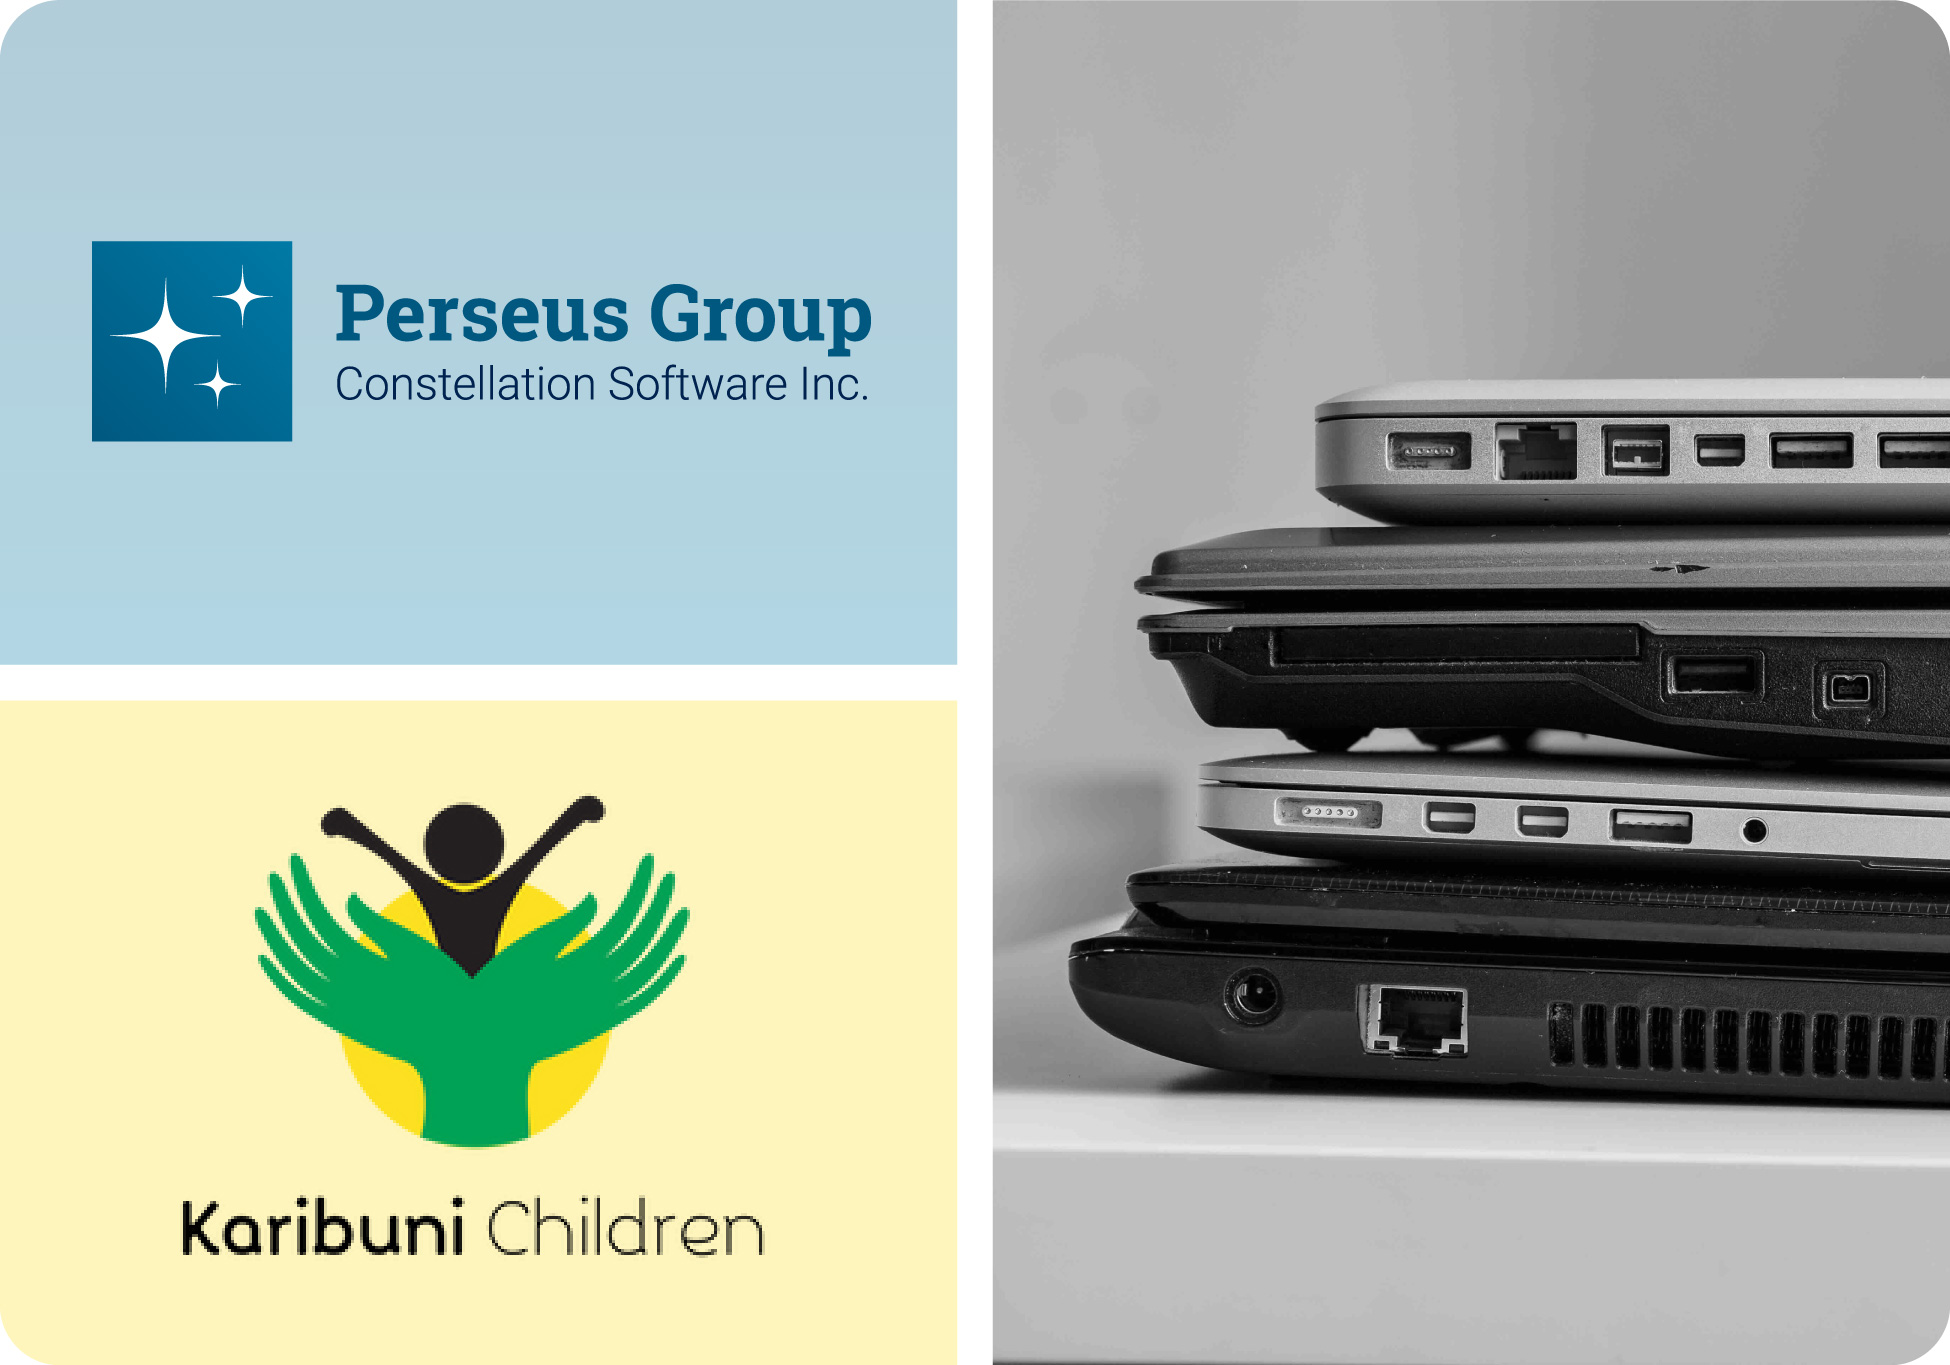 Perseus' Ibcos Computer team donates unused computer equipment to Karibuni Children organization.